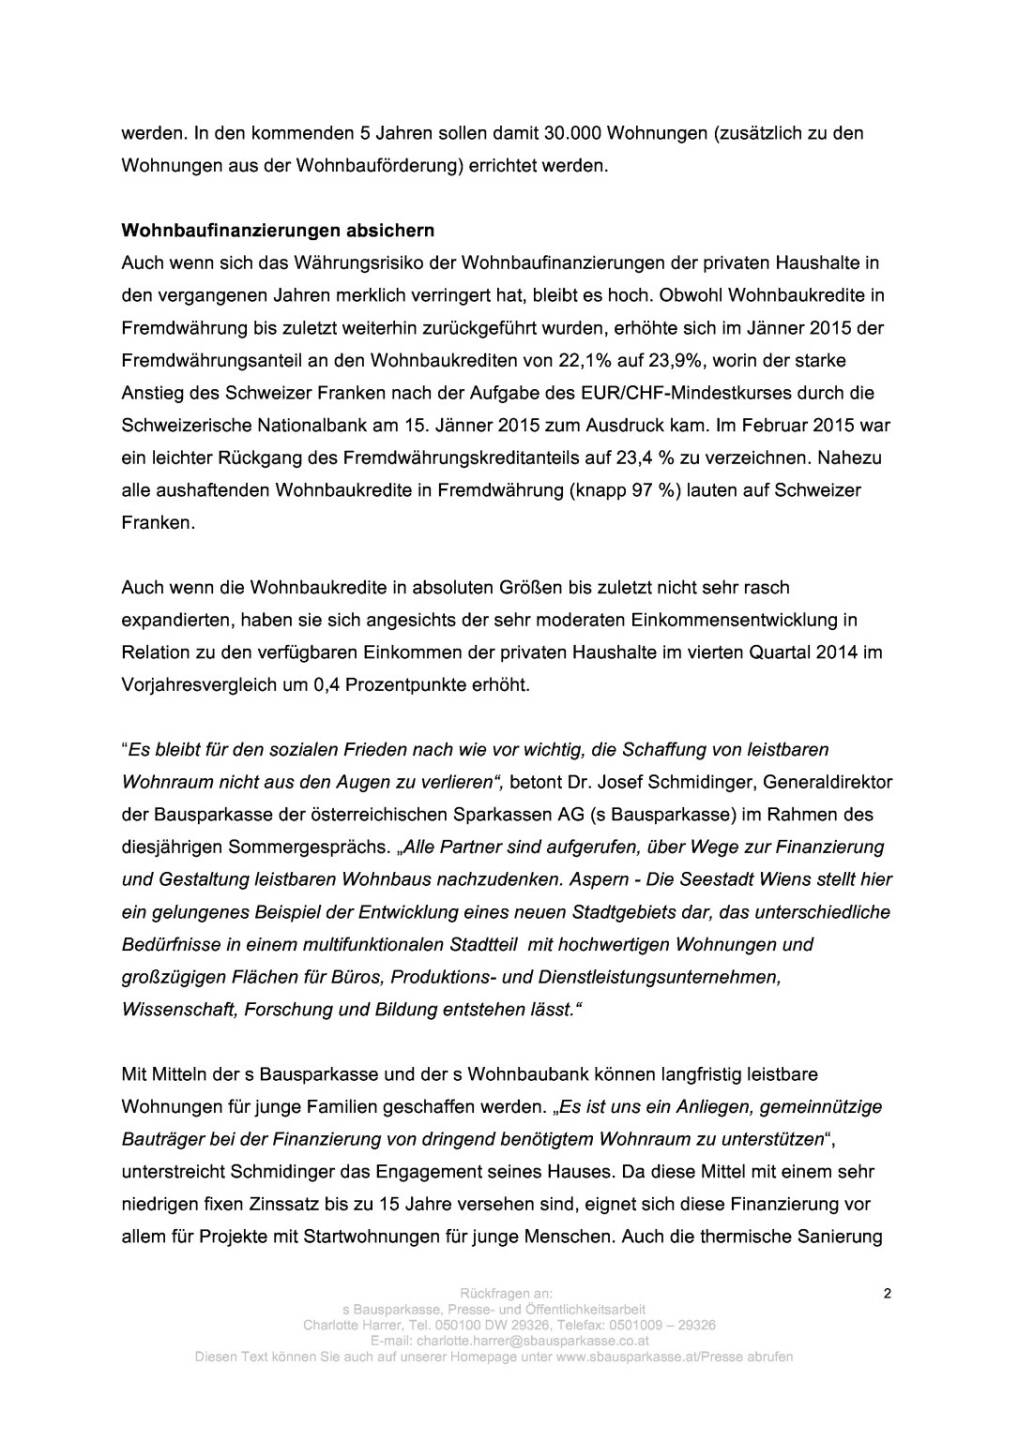 s Bausparkasse: Wohnbau in Österreich bleibt verhalten, Seite 2/5, komplettes Dokument unter http://boerse-social.com/static/uploads/file_245_s_bausparkasse_wohnbau_in_osterreich_bleibt_verhalten.pdf